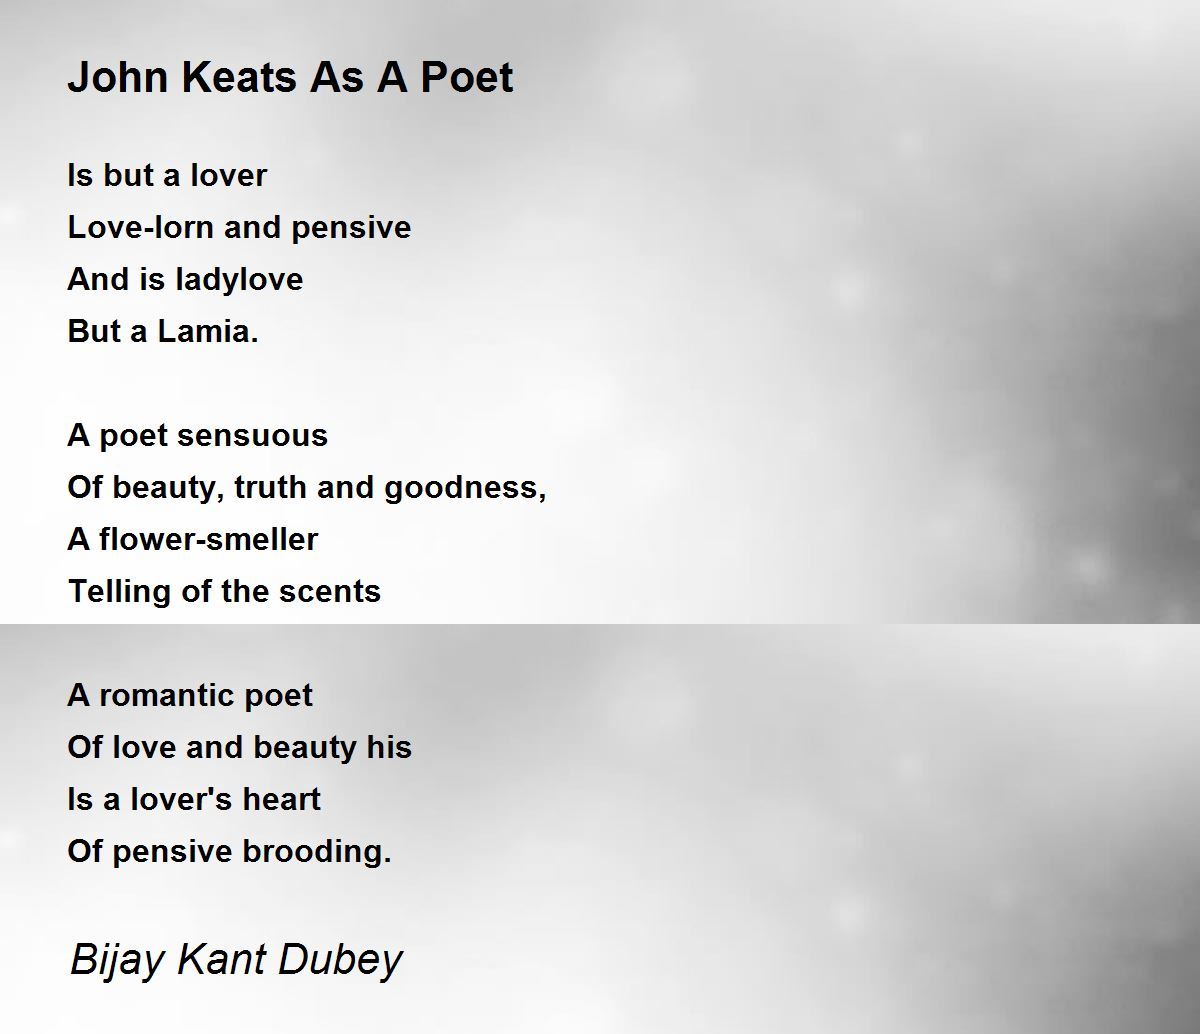 keats as a poet of beauty